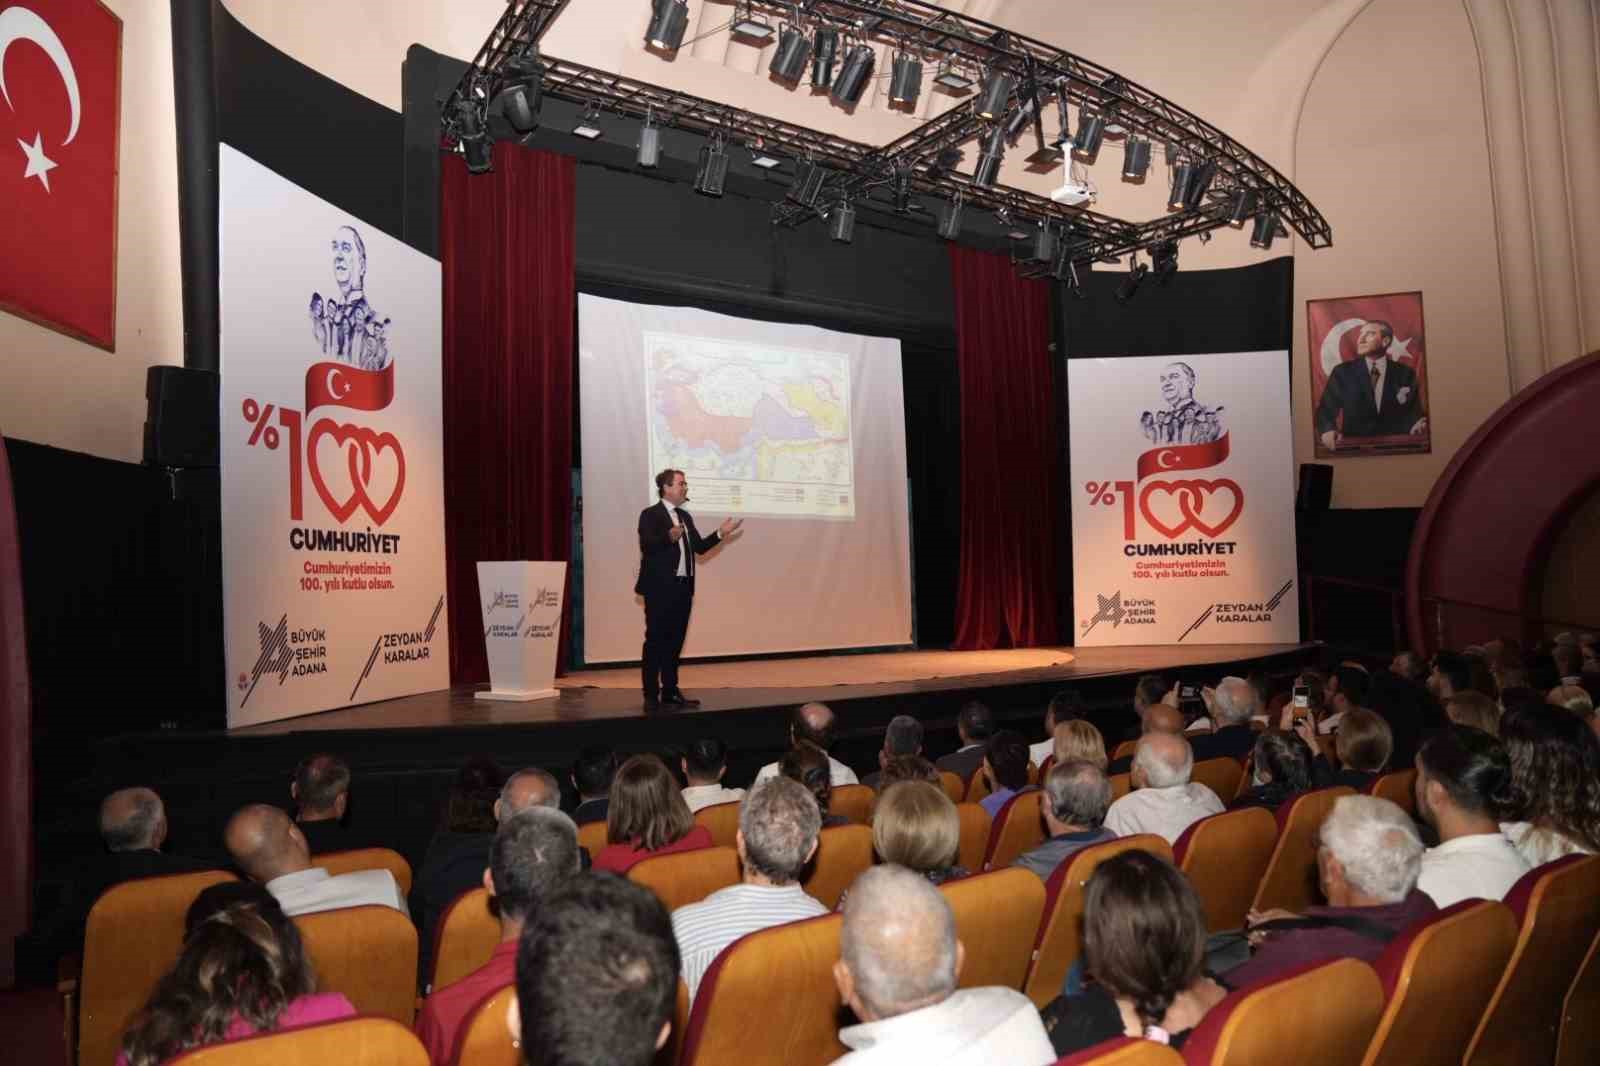 Cumhuriyetin 100. Yıl kutlamaları, “100. Yılda Cumhuriyet” konulu konferansla başladı